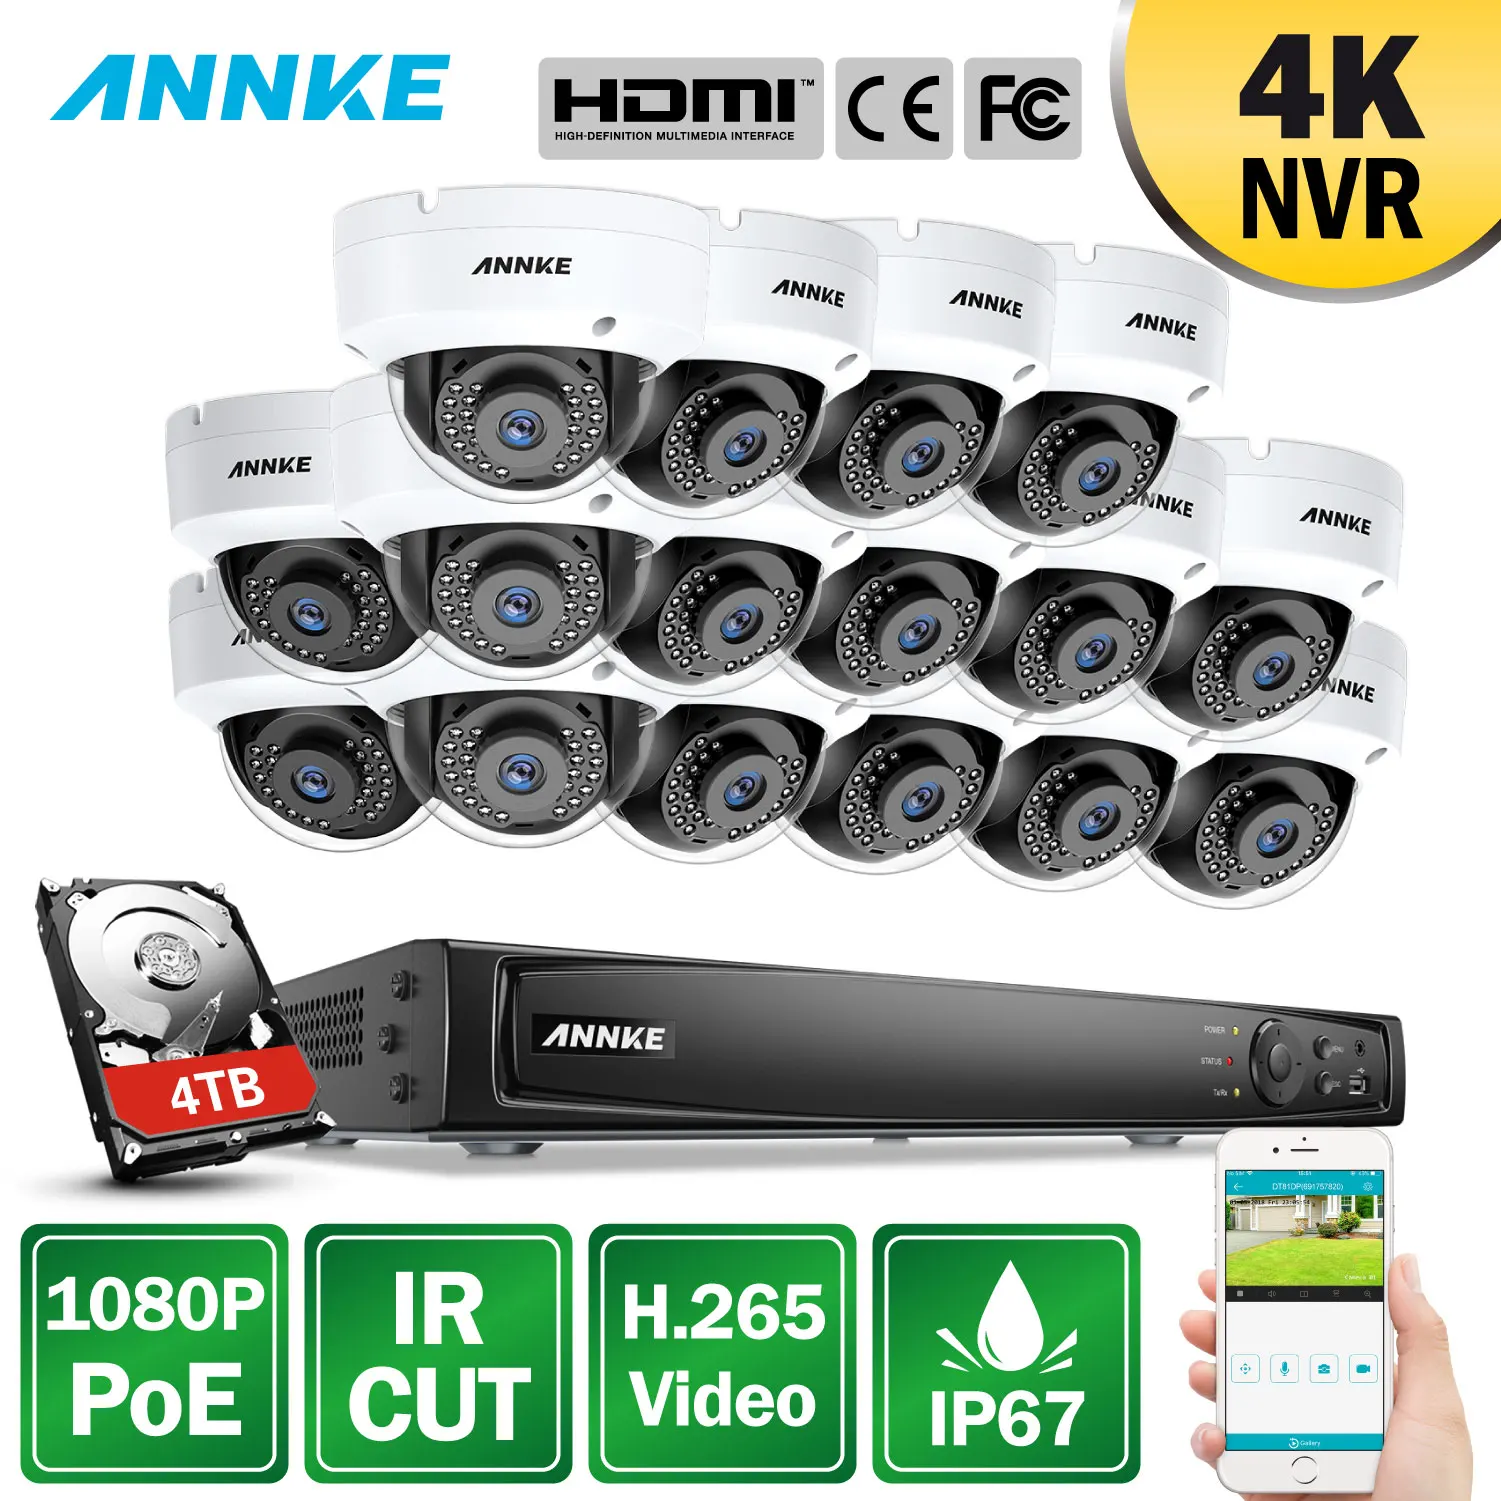 ANNKE Профессиональный 1080 P PoE камера безопасности Системы 4 K 16CH безопасность NVR с 16 шт. 1080 P купольные камеры CCTV